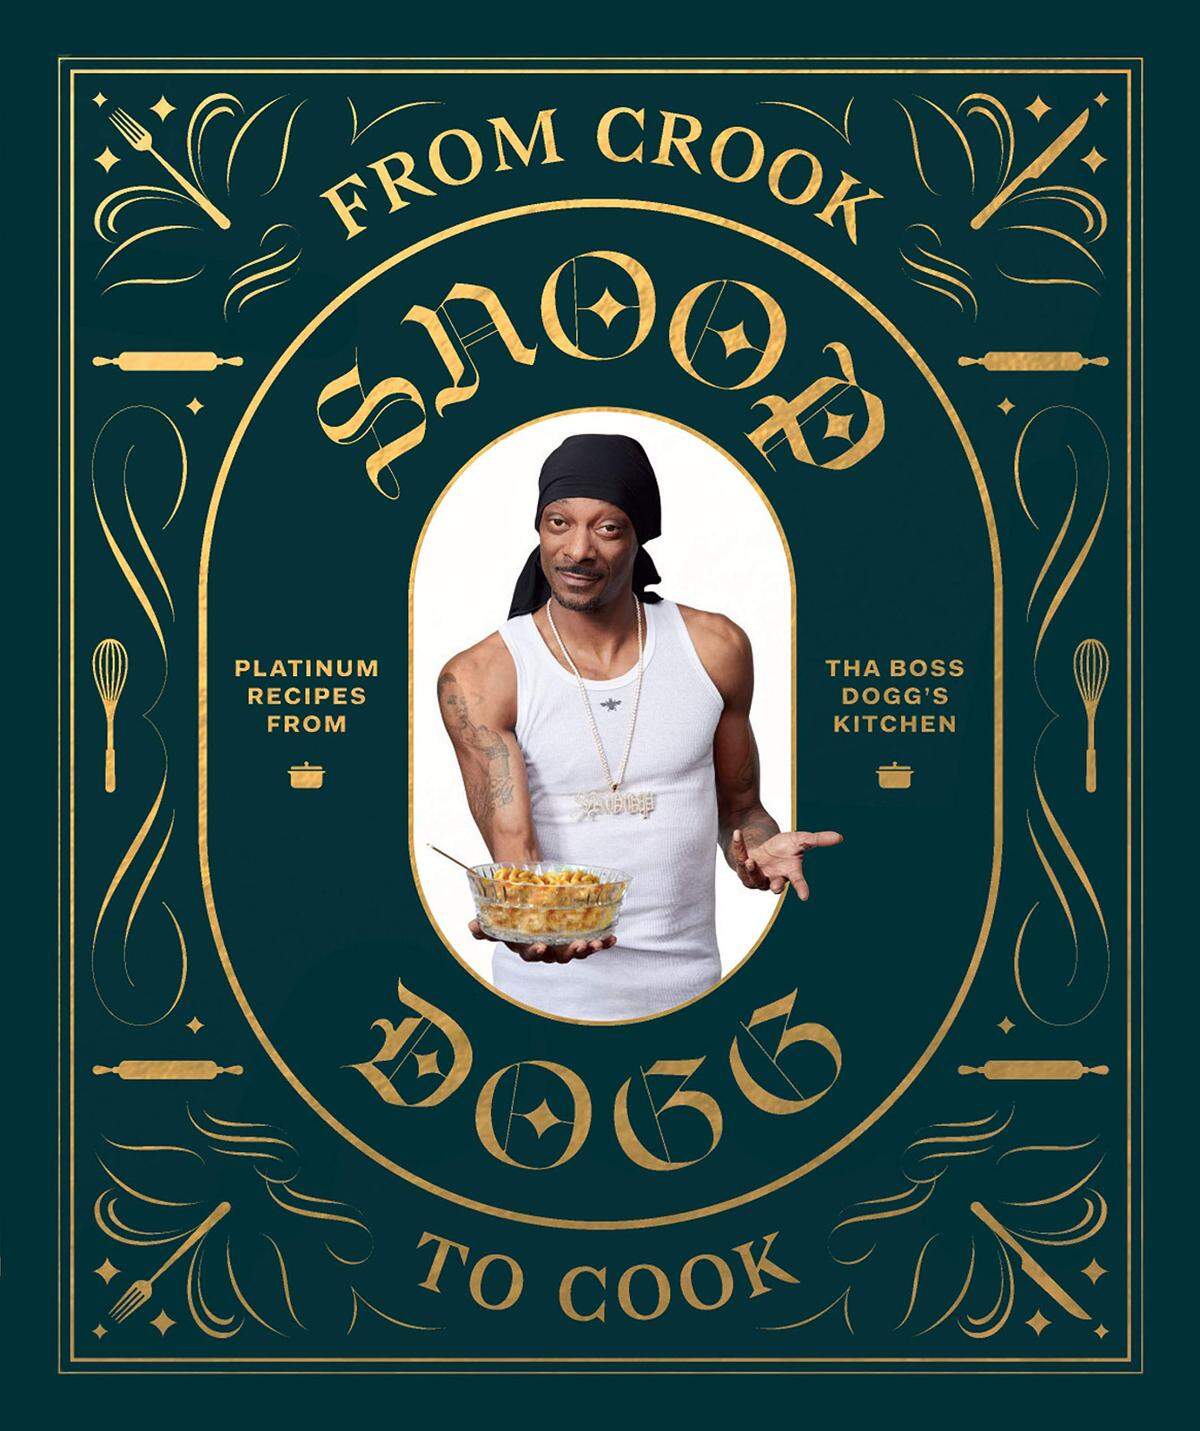 Vom Rapper zum Kochbuch-Autor? Was spricht dagegen, dachte sich wohl Snoop Doog. Ende Oktober ist sein erstes Kochbuch „From Crook to Cook“ (dt.: „Vom Gauner zum Koch“) mit 50 Lieblingsrezepten des Musikers erscheinen - „Cannabis-frei“, verspricht der Verlag.